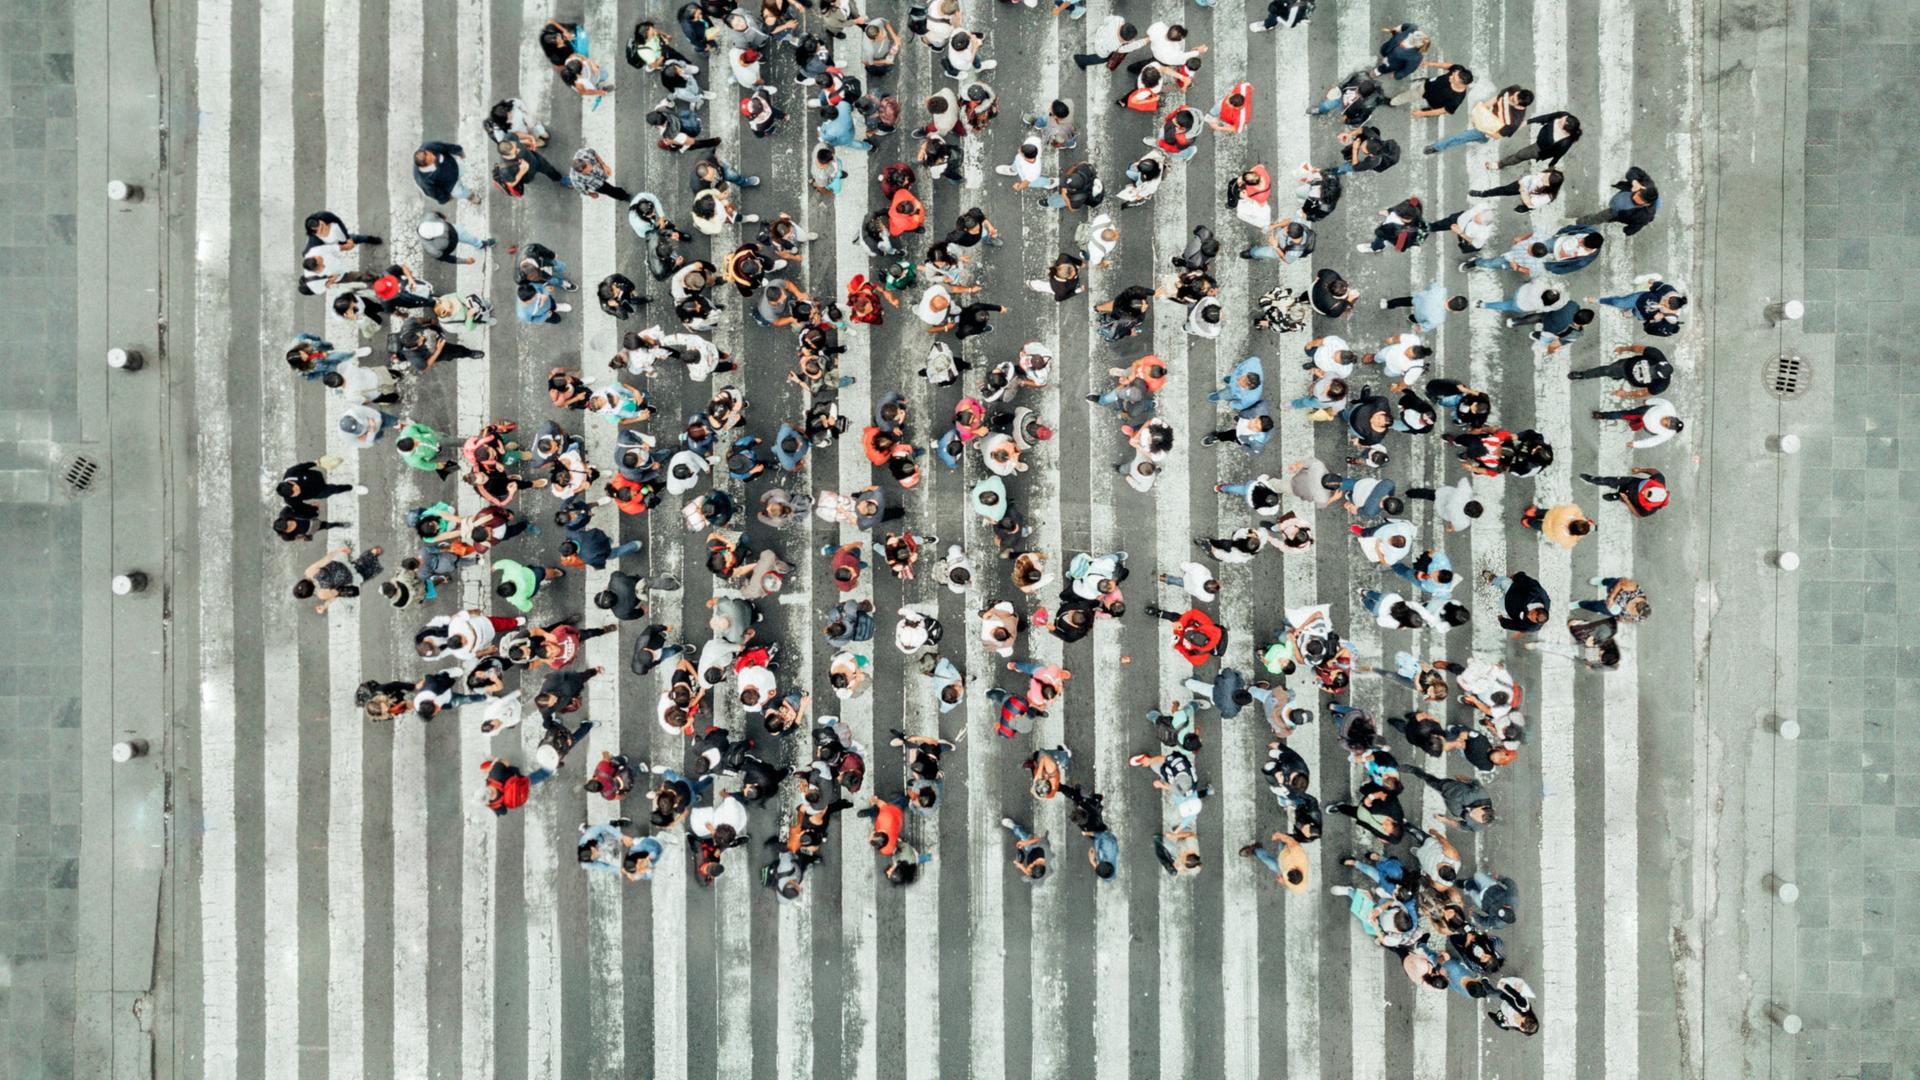 Vogelperspektive auf eine Gruppe von Menschen, die auf einem Zebrastreifen steht und gemeinsam die Form einer Sprechblase bildet.